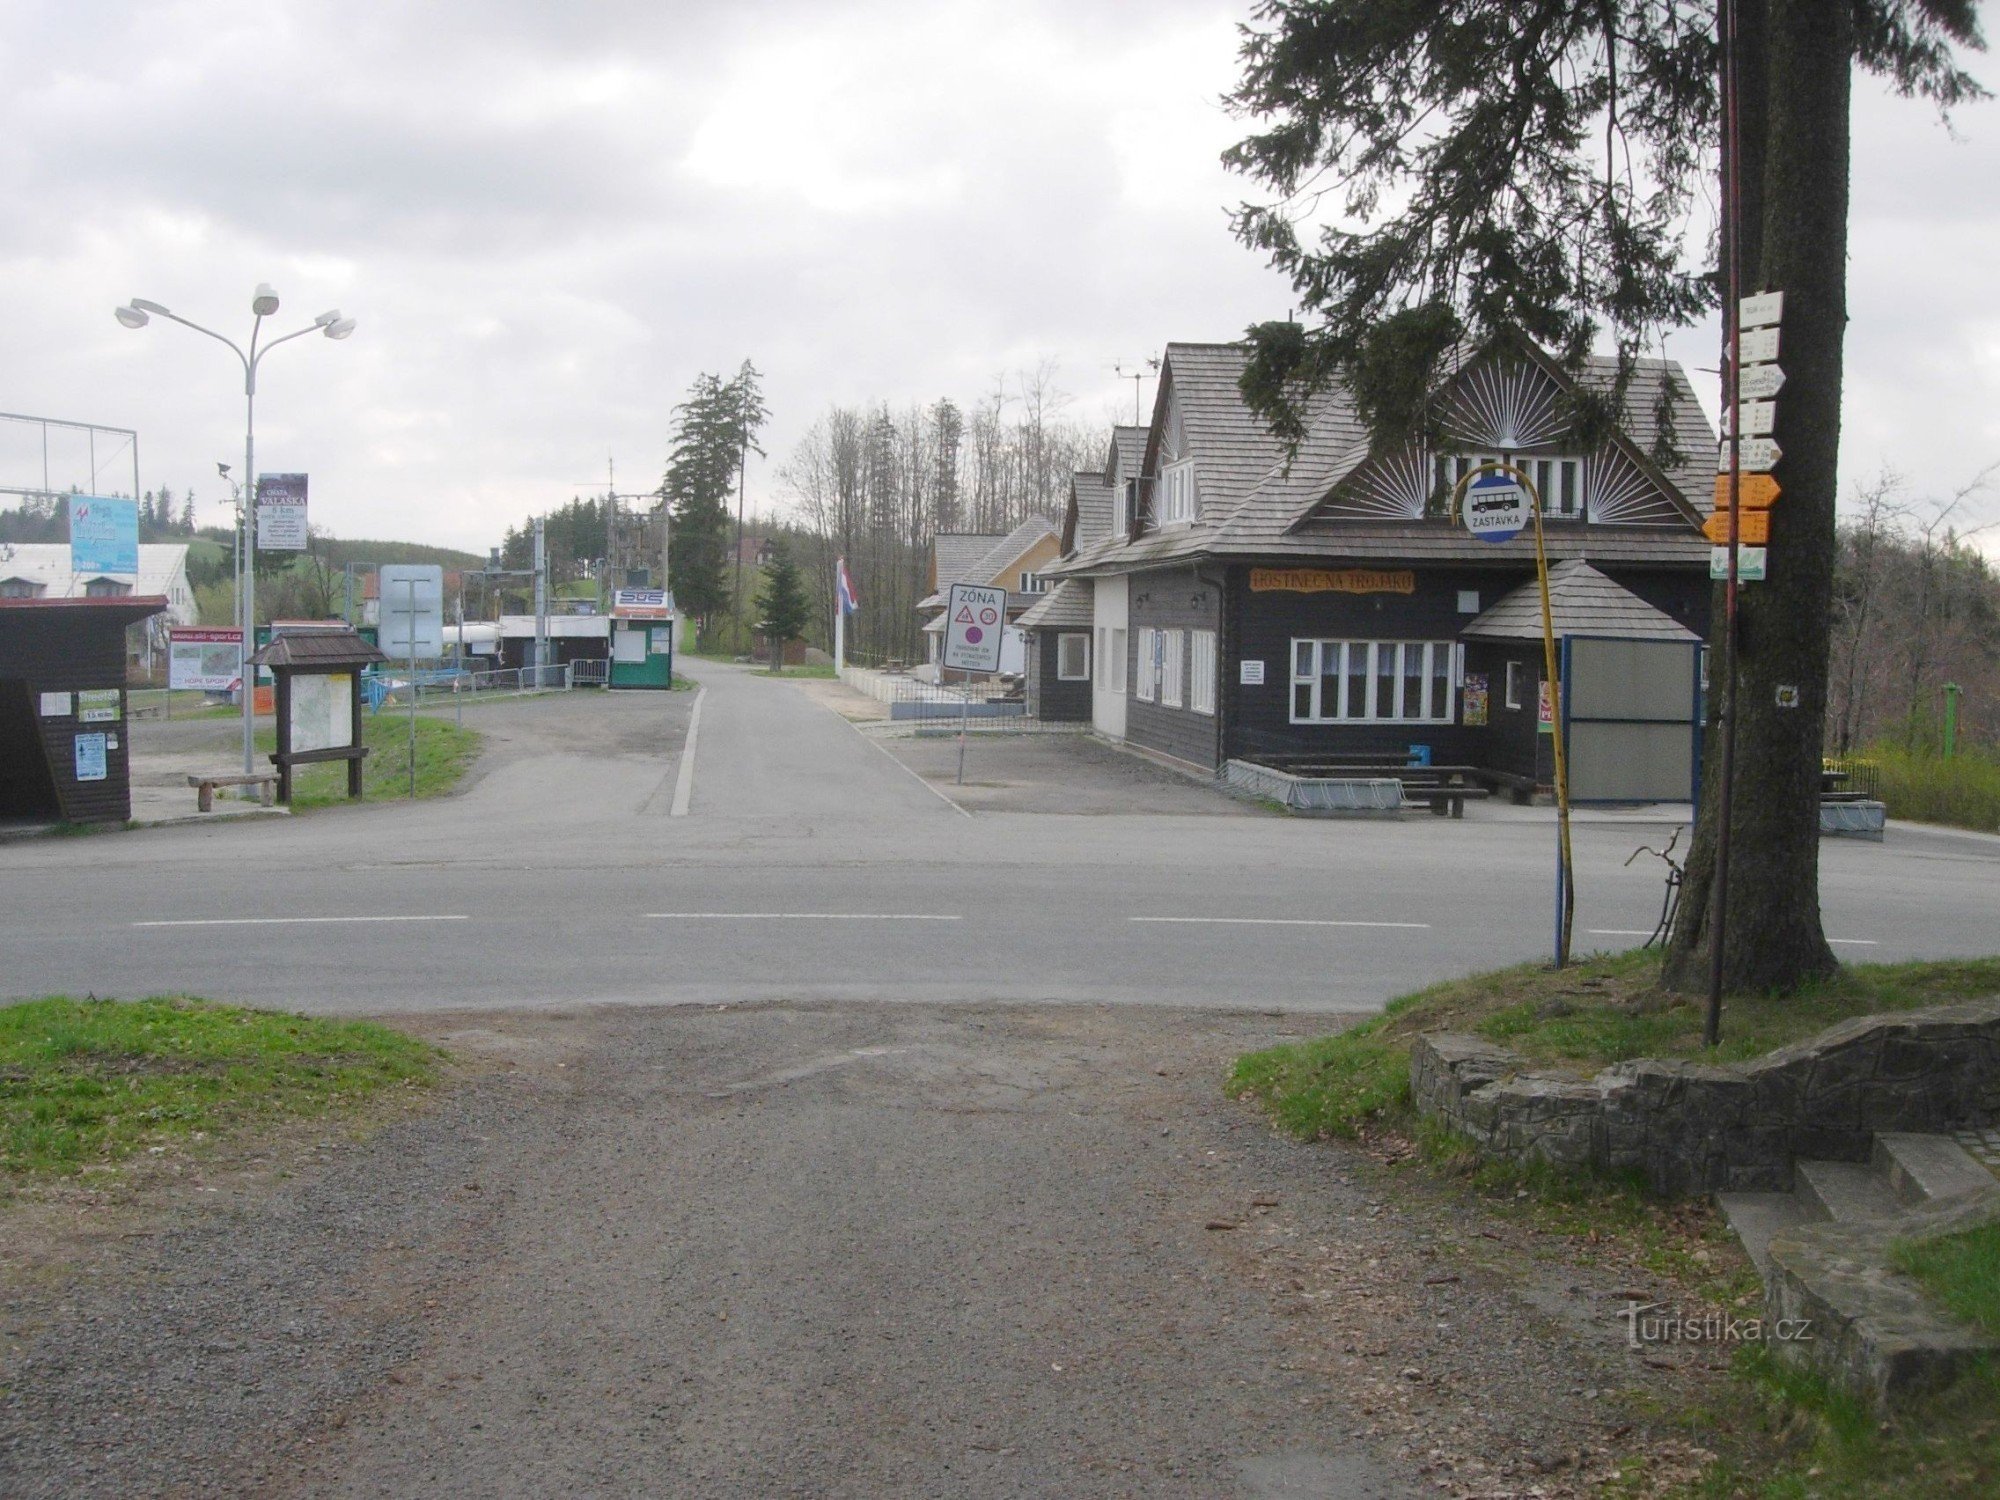 En trevägsknut med ett värdshus, en busshållplats, en skidort och en skylt